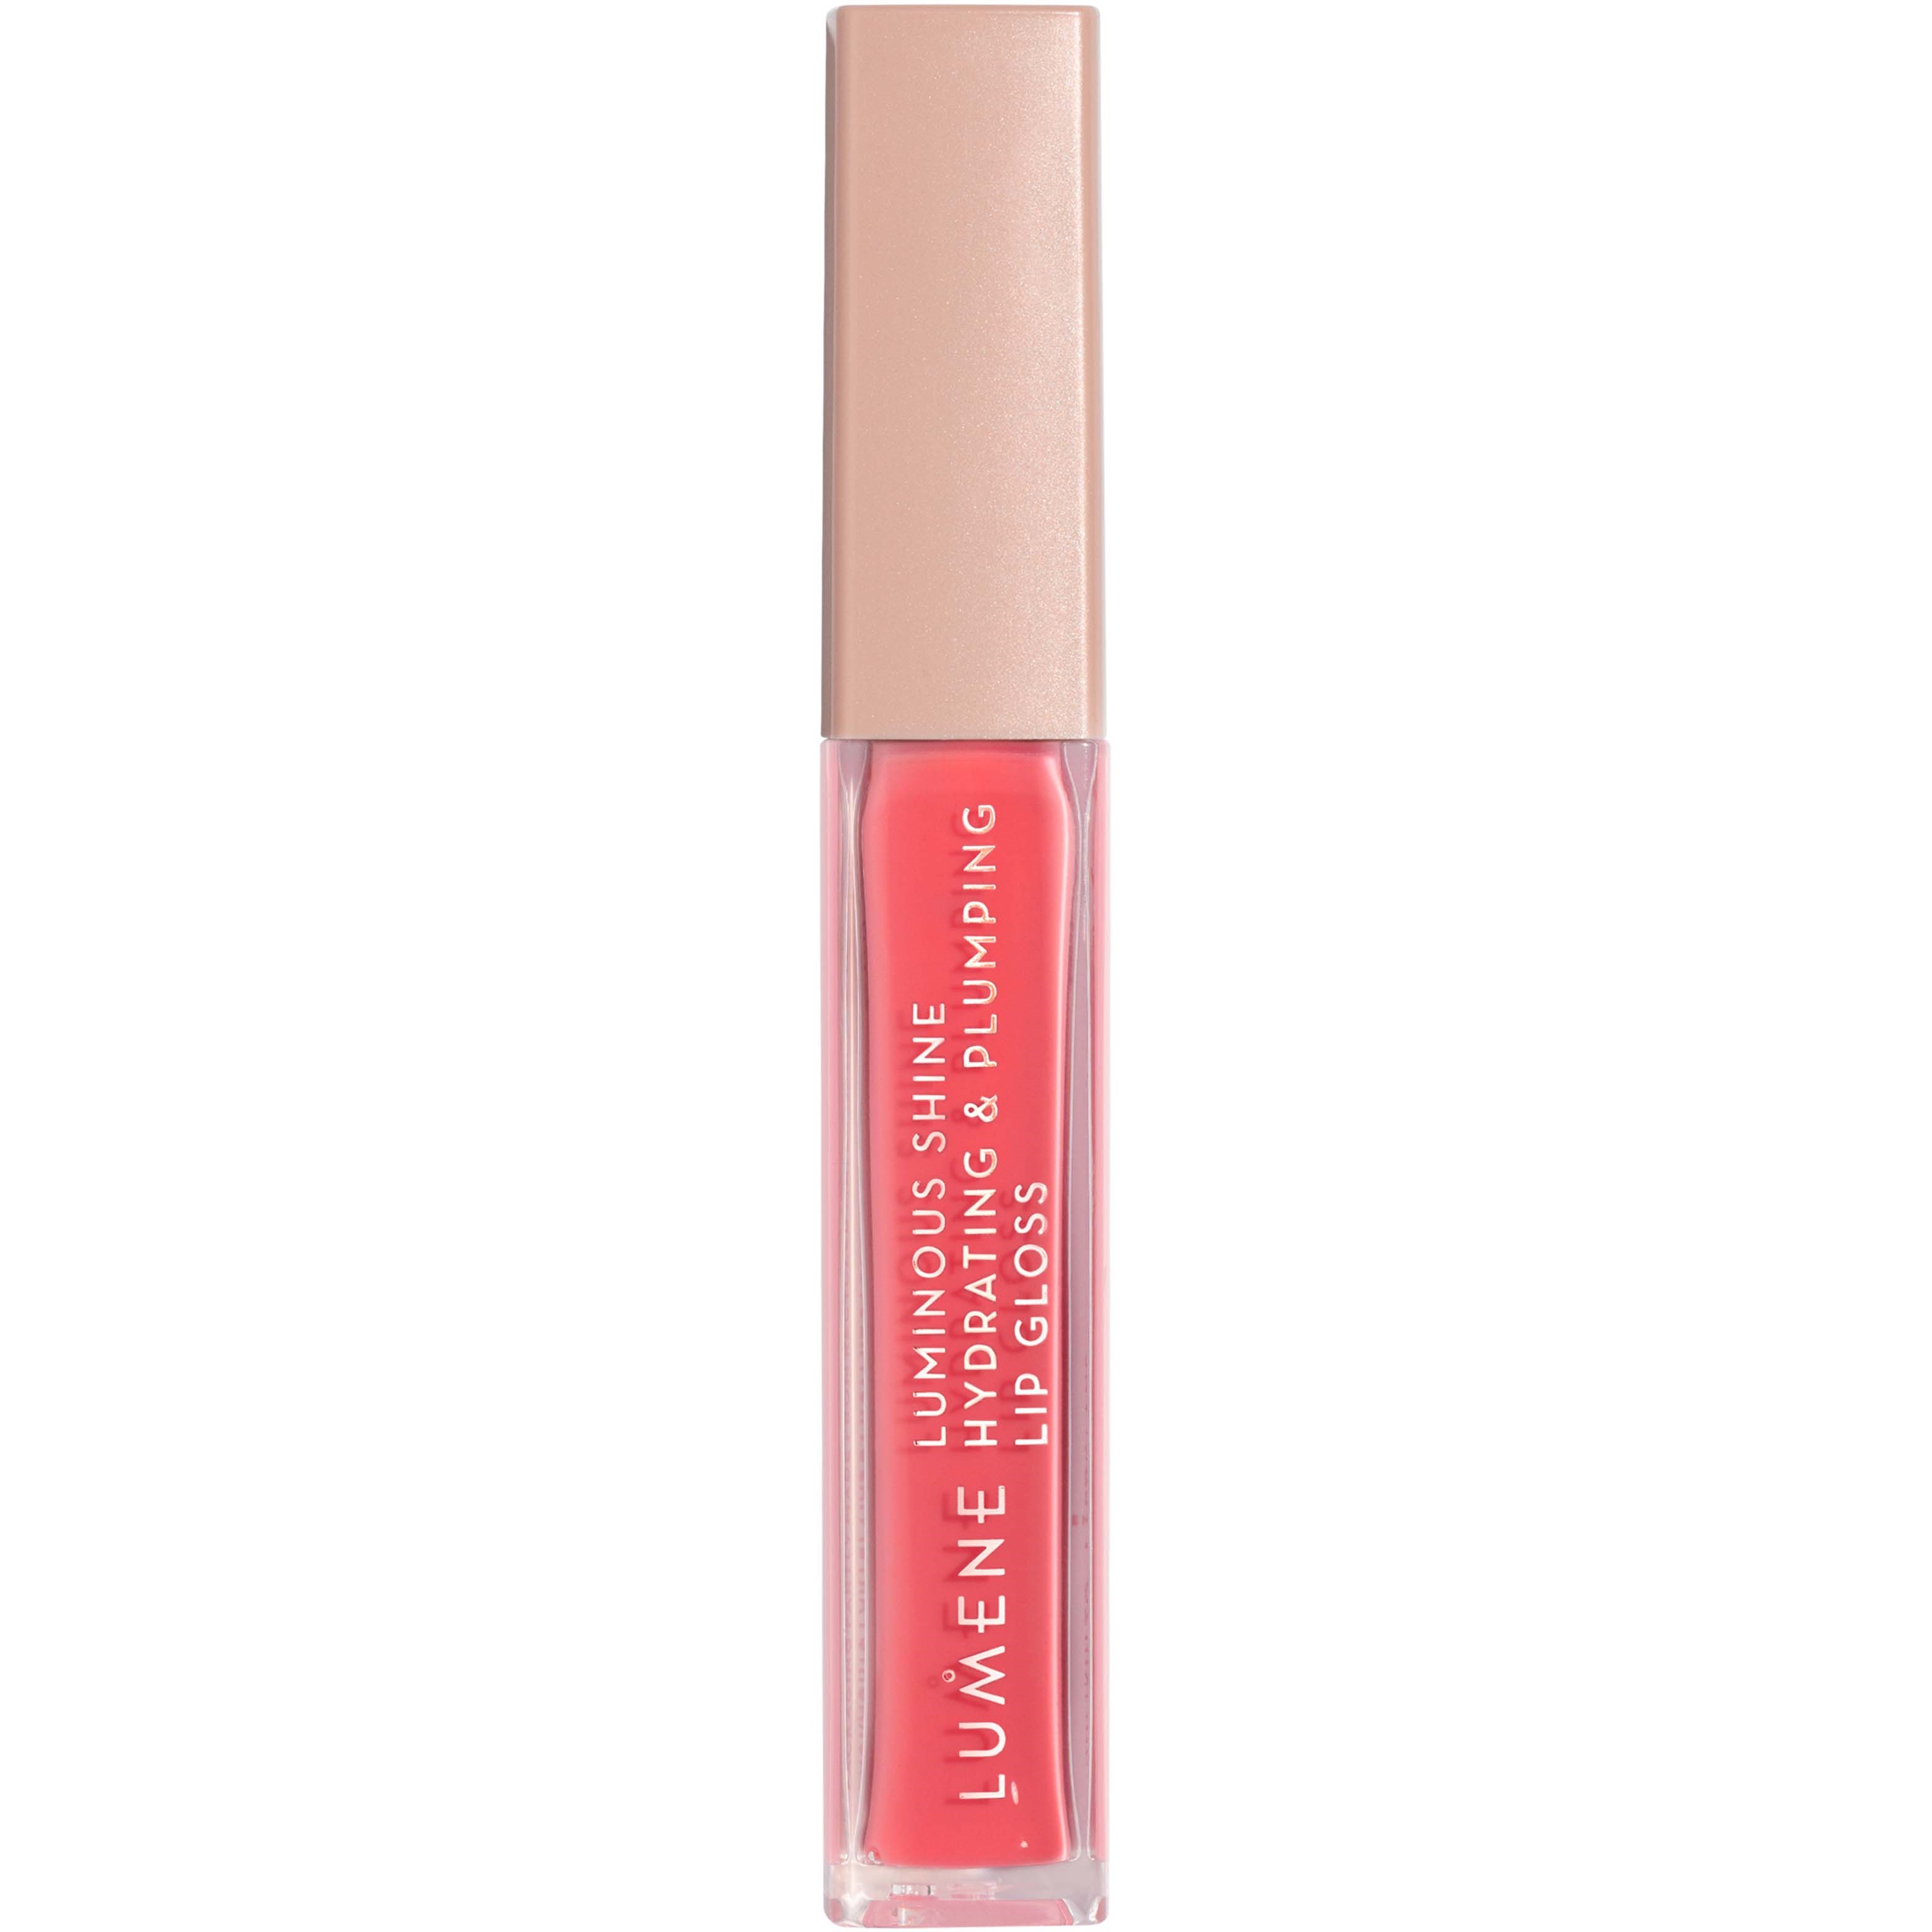 Bilde av Lumene Luminous Shine Hydrating & Plumping Lip Gloss 4 Peach Pink